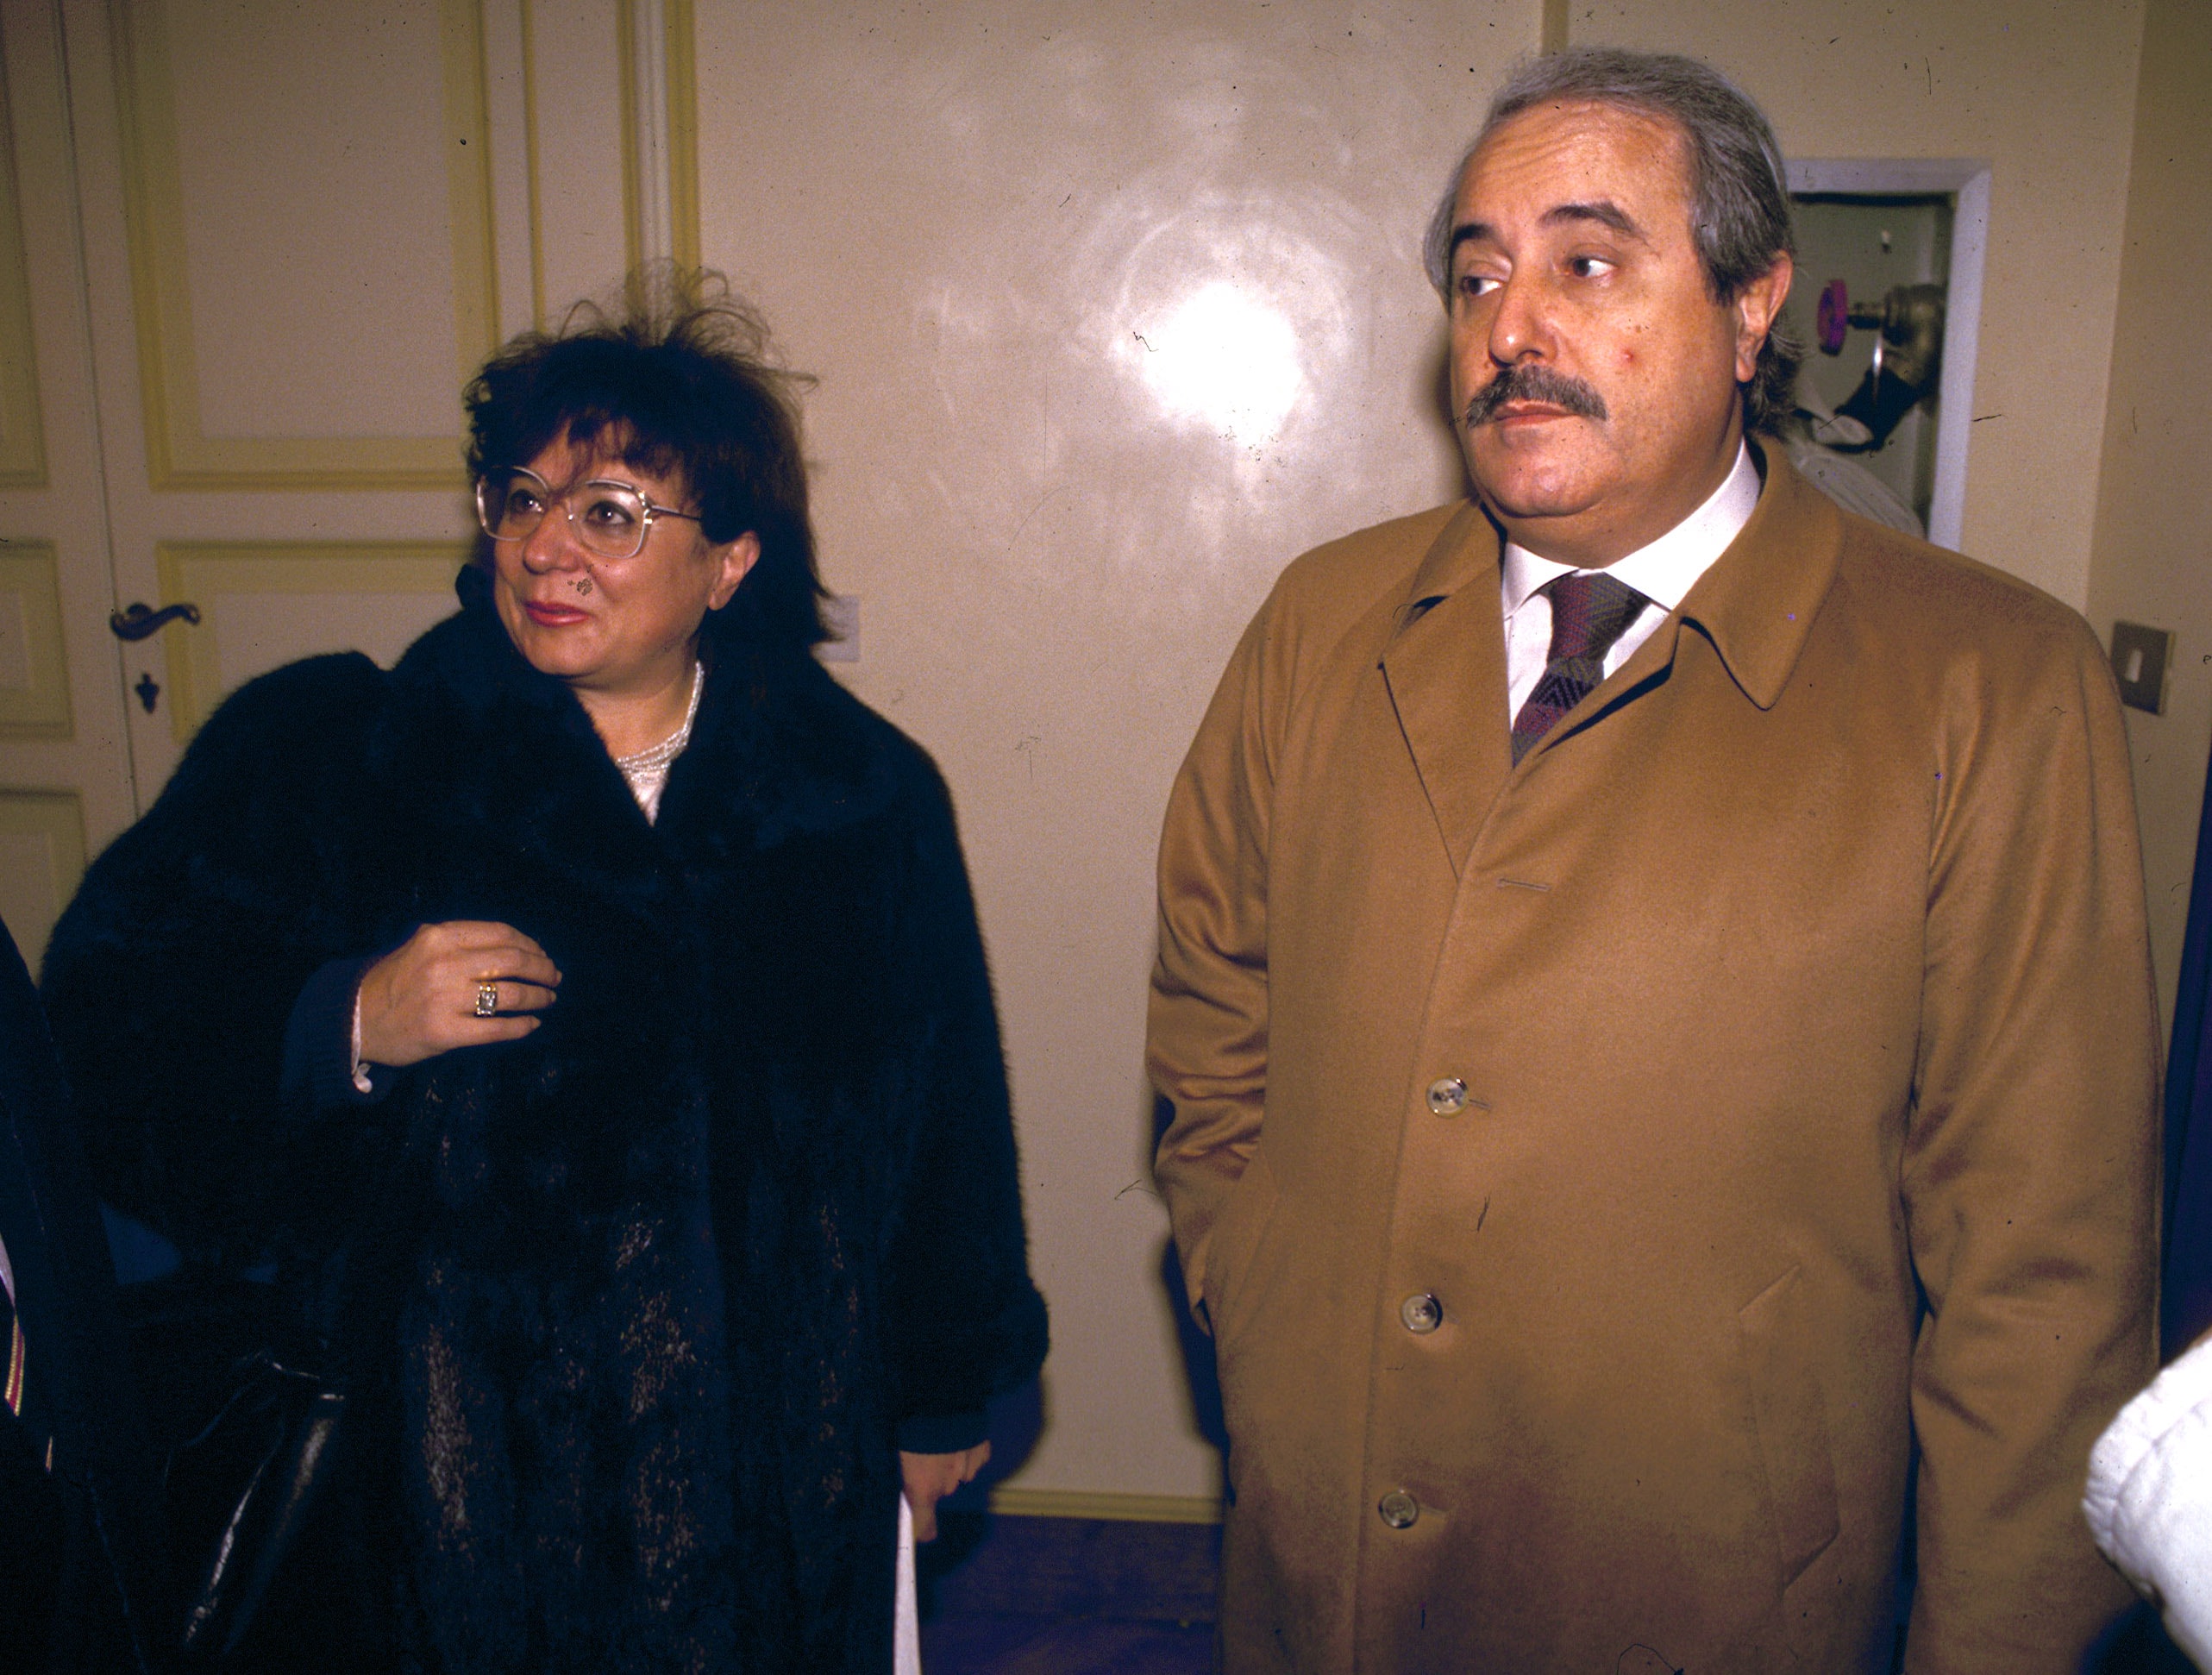 Nel 1989 insieme alla collega magistrato Livia Pomodoro, che viene convinta dallo stesso Falcone, con il quale collabora a Roma, ad accettare la nomina di capo di gabinetto del ministro di Grazia e Giustizia